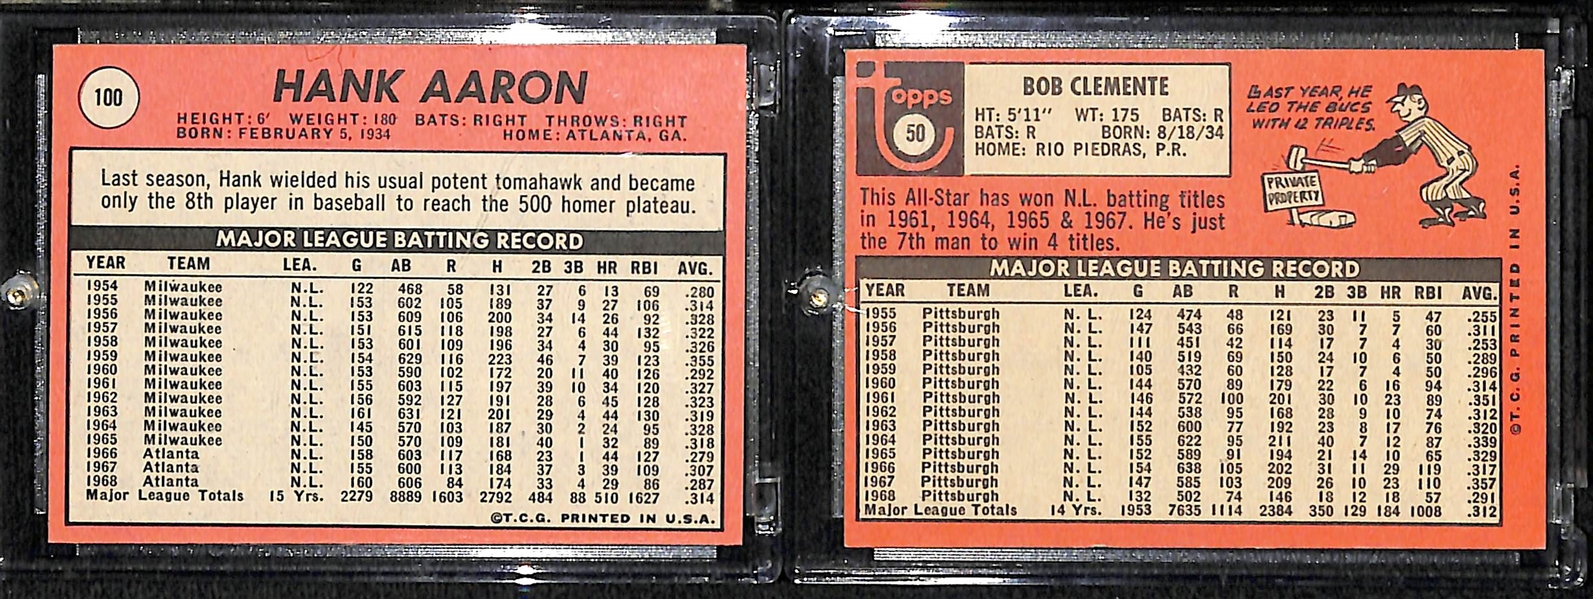 1969 Topps Roberto Clemente & Hank Aaron Cards